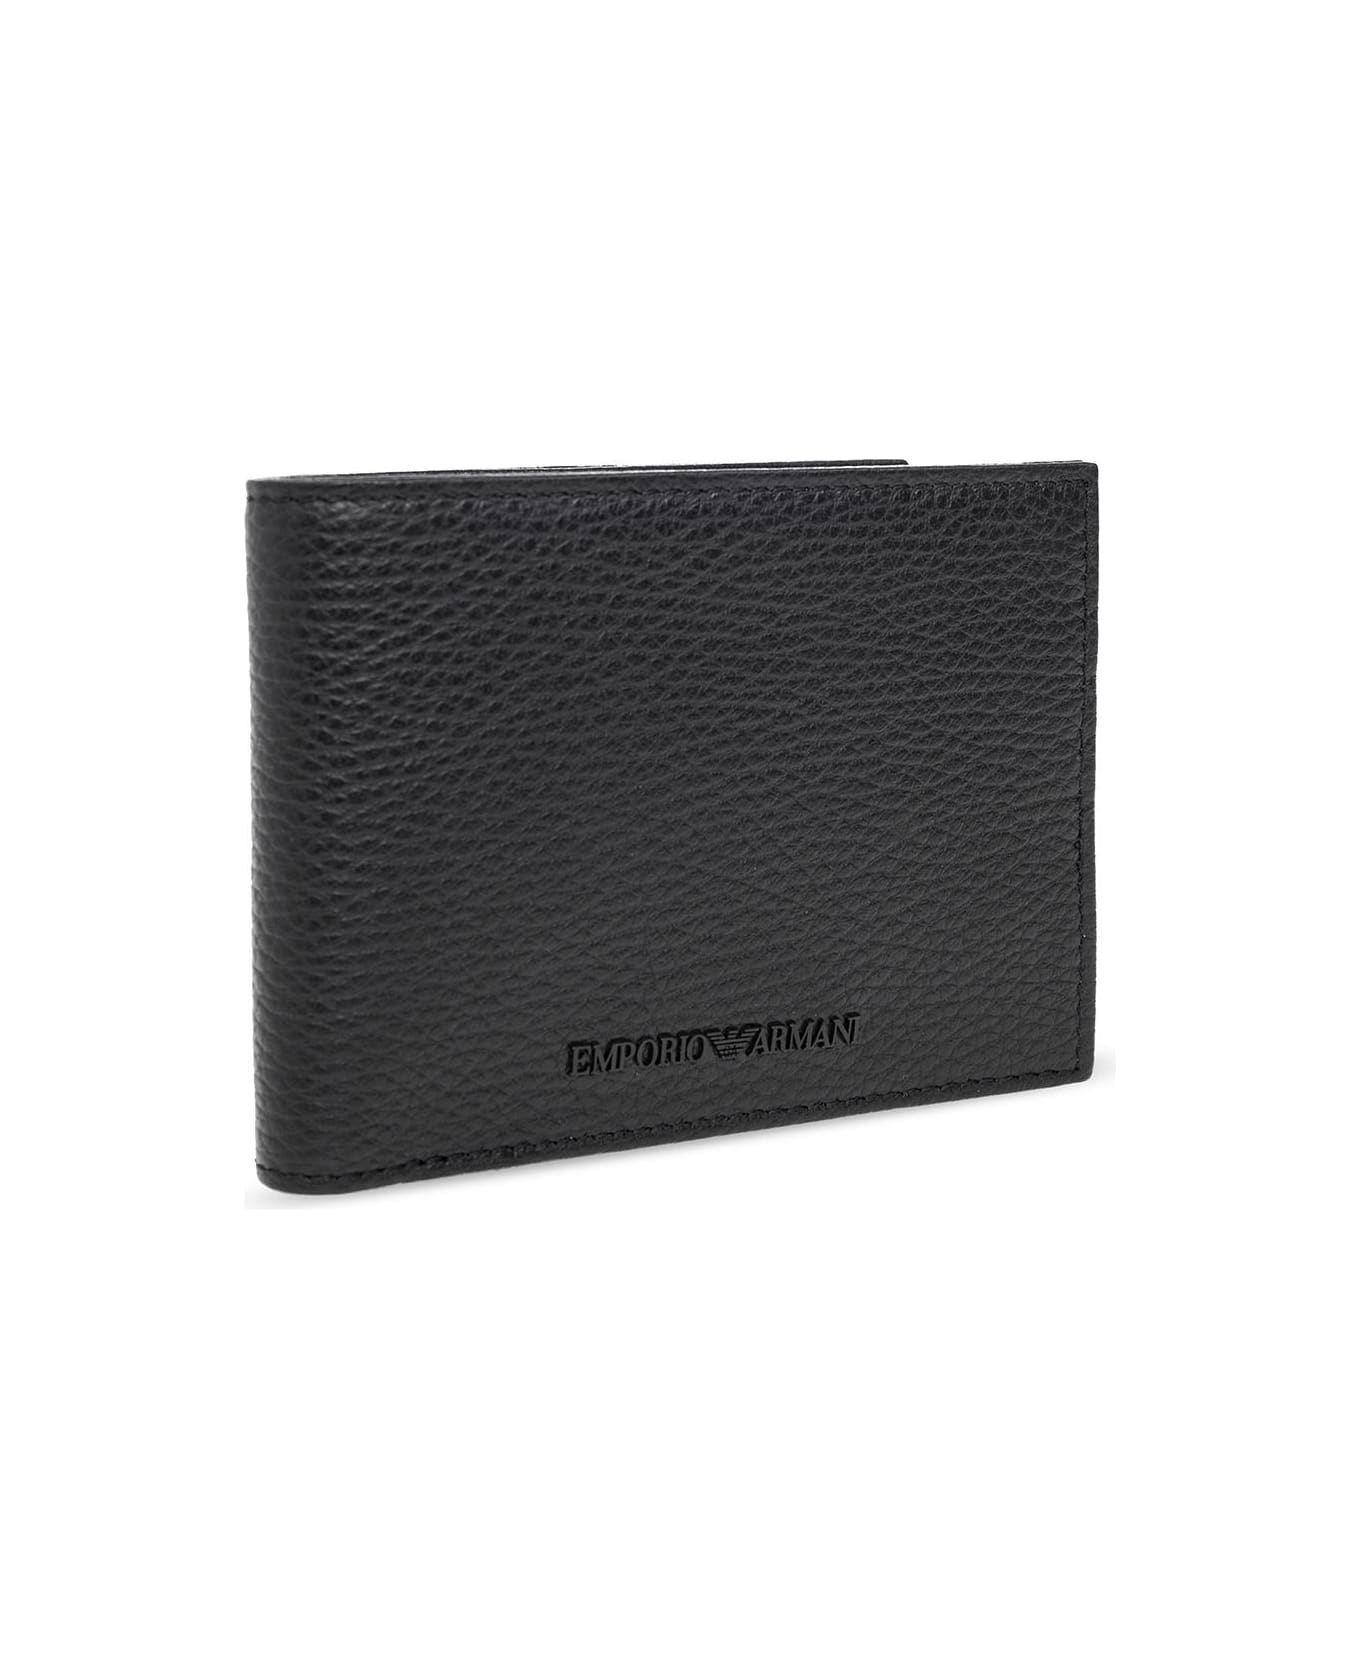 Emporio Armani Wallet And Card Holder Case - Nero 財布